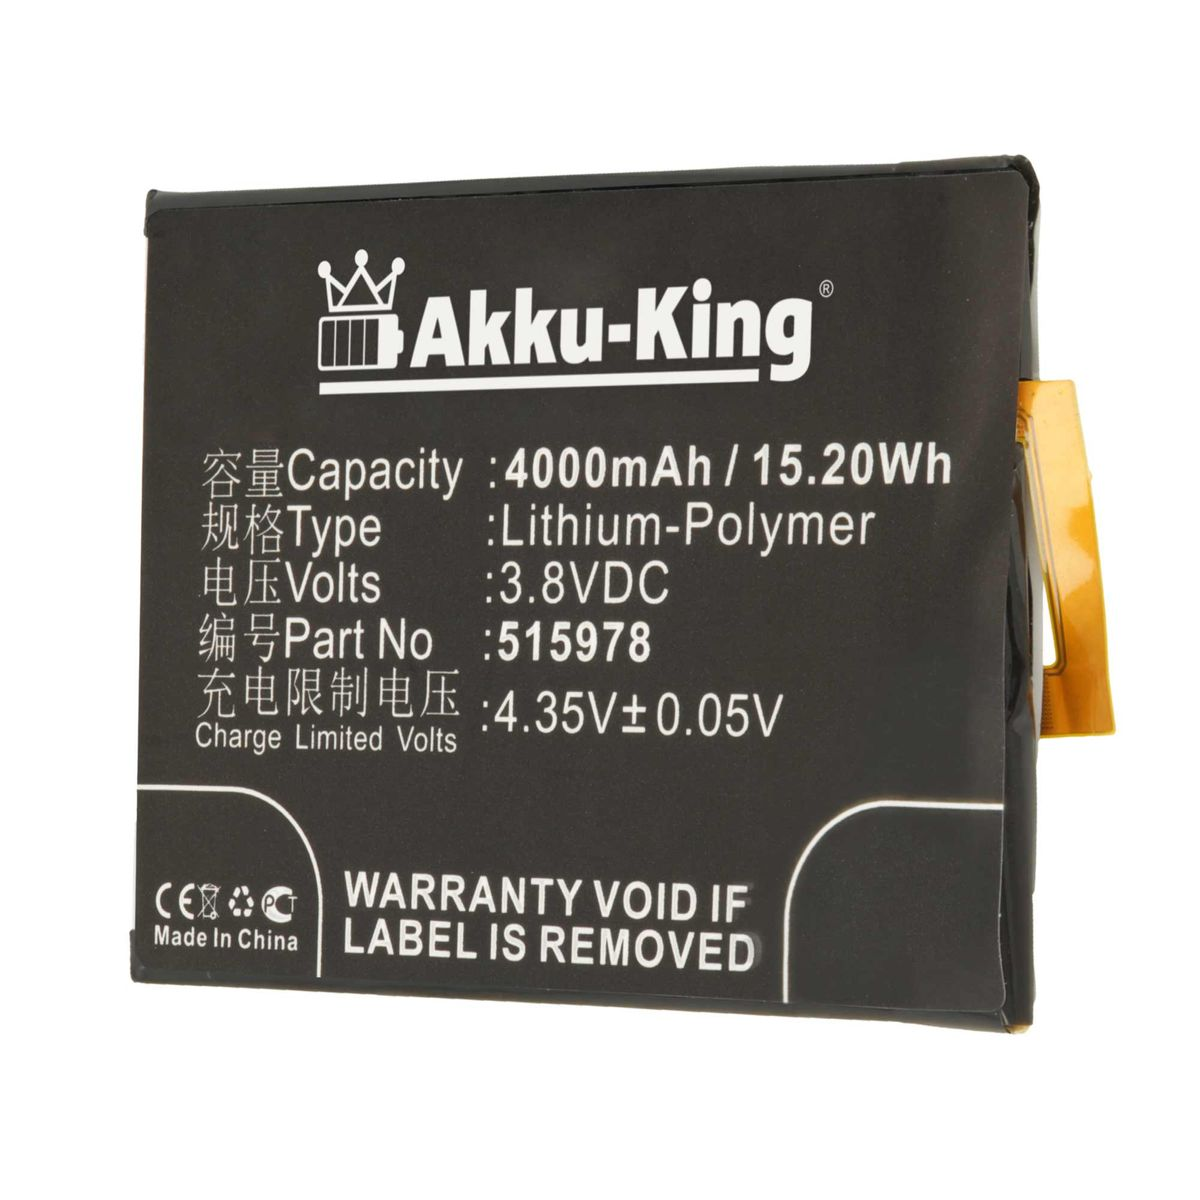 AKKU-KING Akku kompatibel mit ZTE 4000mAh 3.8 Handy-Akku, 515978 Volt, Li-Polymer